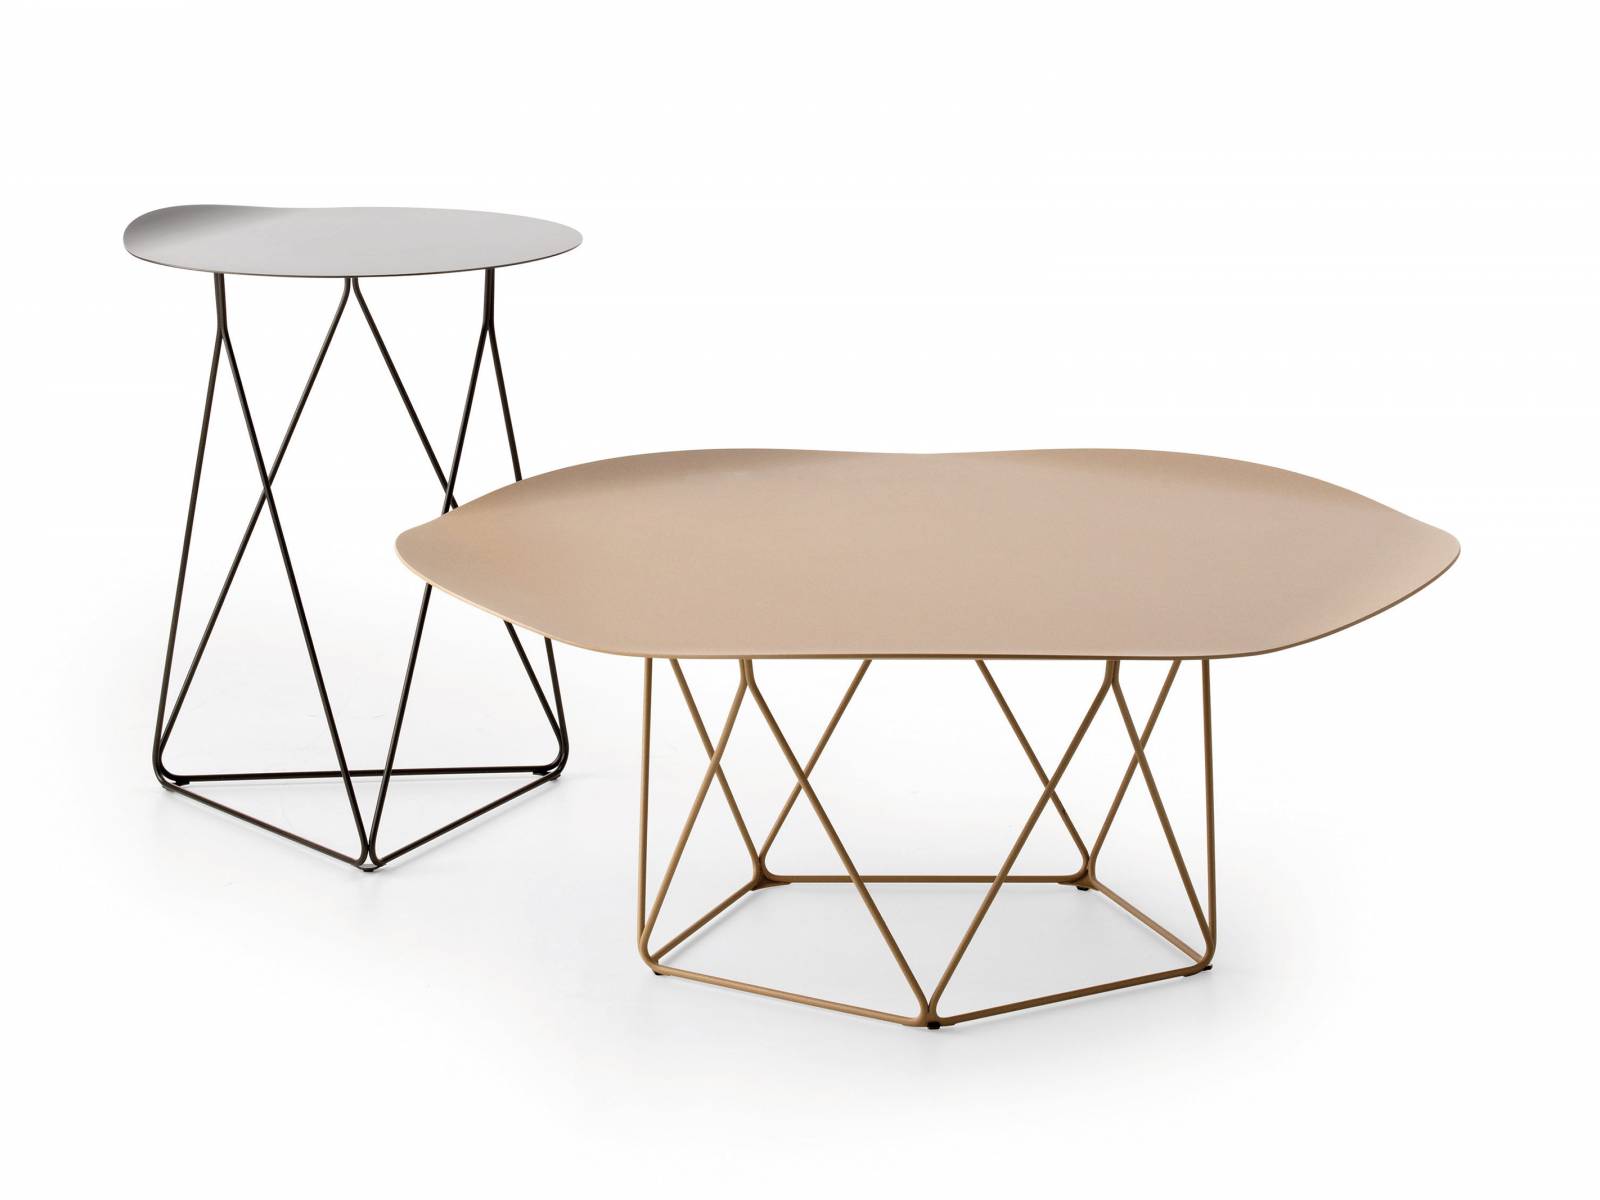 Kleine Unterschiede im Detail zeichnen die Serie «Coda» aus: Das fünfeckige Untergestell des Couchtisches hat beim Beistelltisch nur drei Ecken. Beide Tische sind in vielen Farben erhältlich. Design: Pascal Bosetti. Leolux.